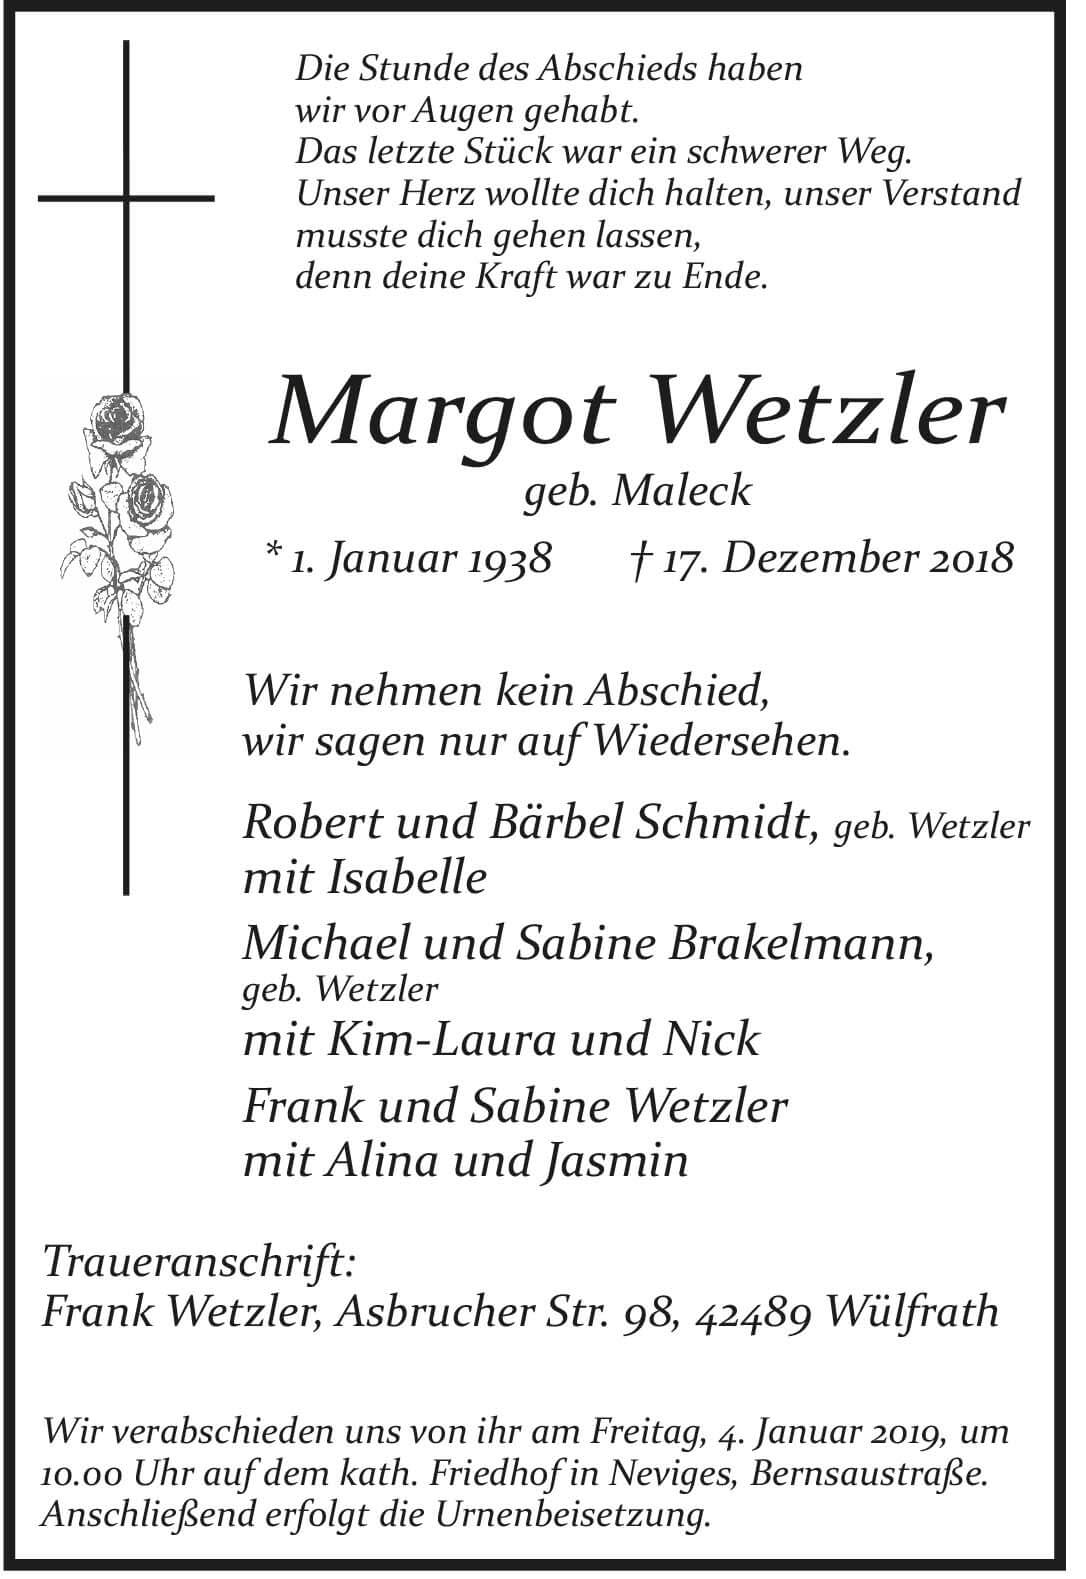 Margot Wetzler † 17. 12. 2018